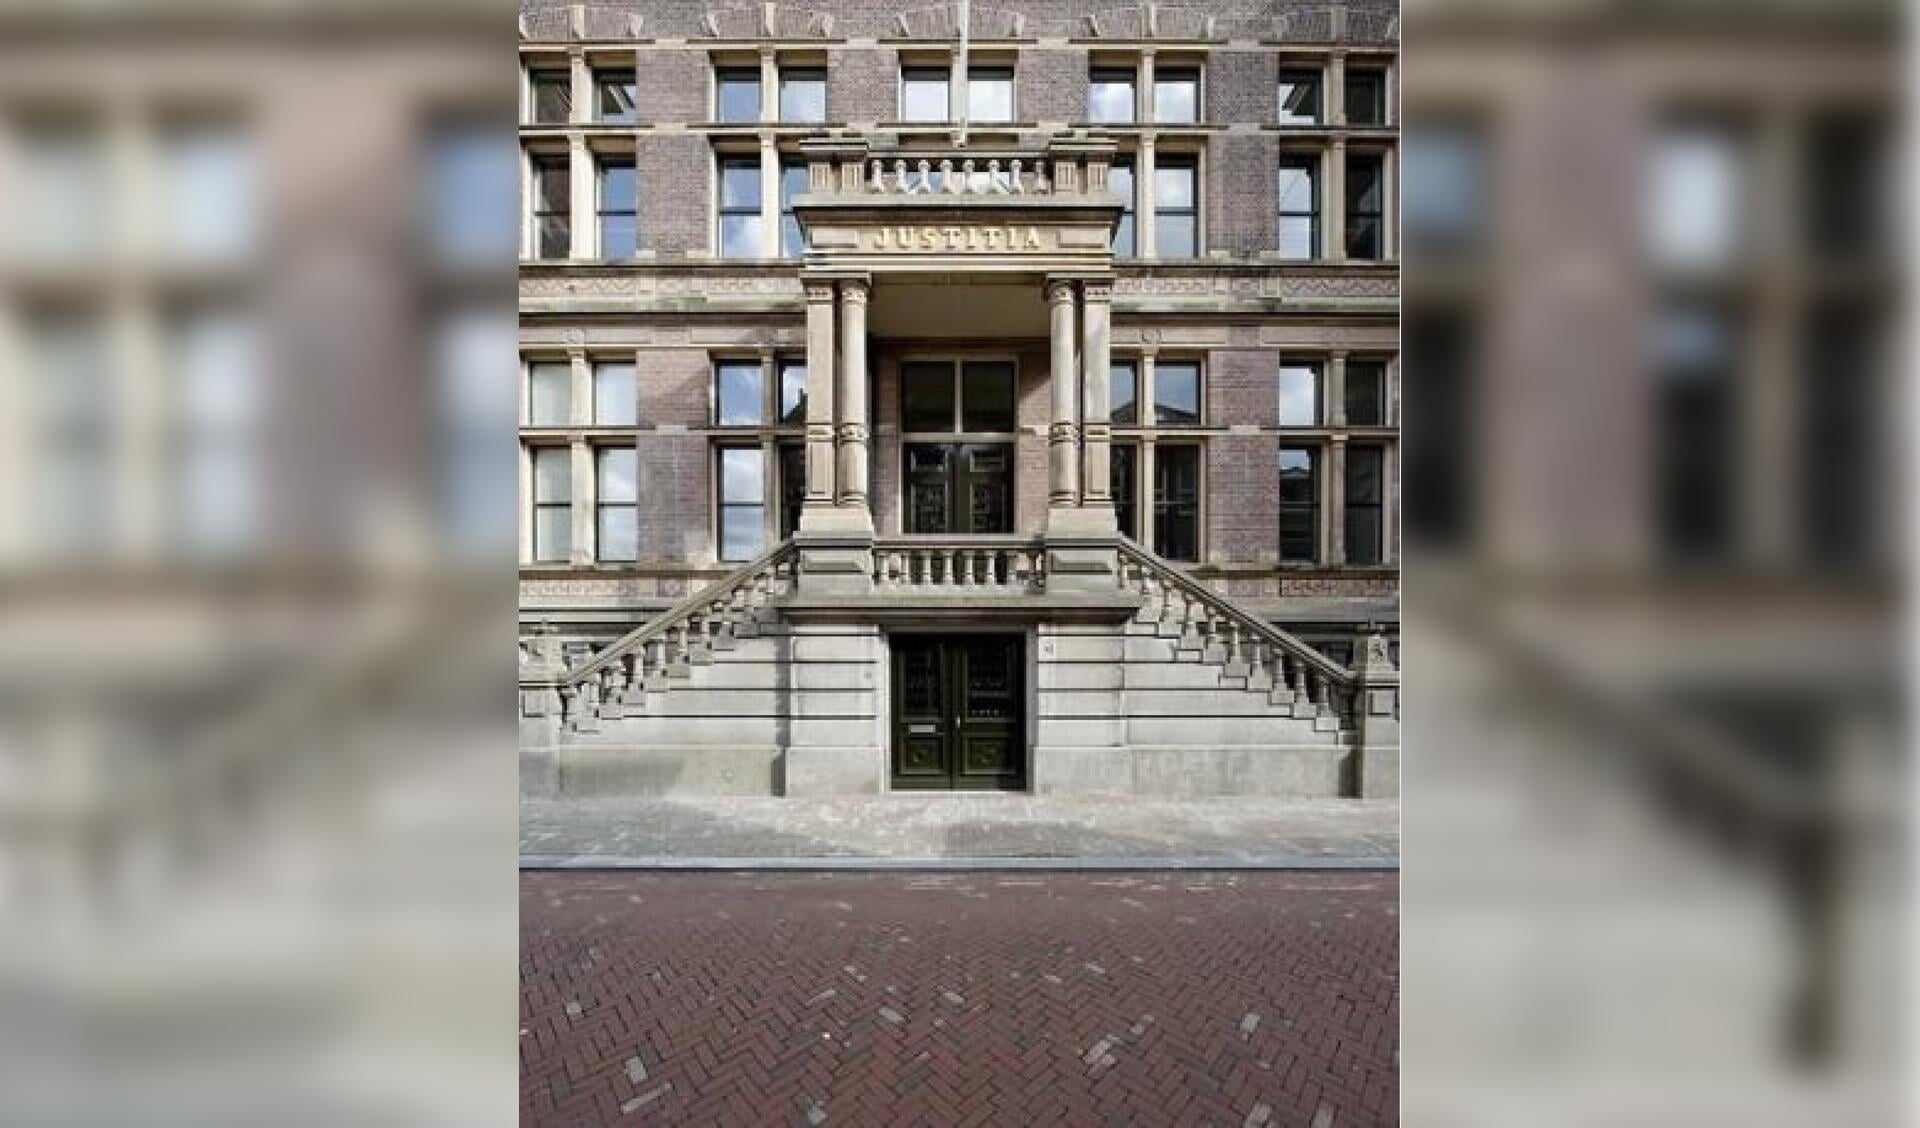 Het gerechtsgebouw in Haarlem was 100 jaar geleden het toneel van een tragedie.